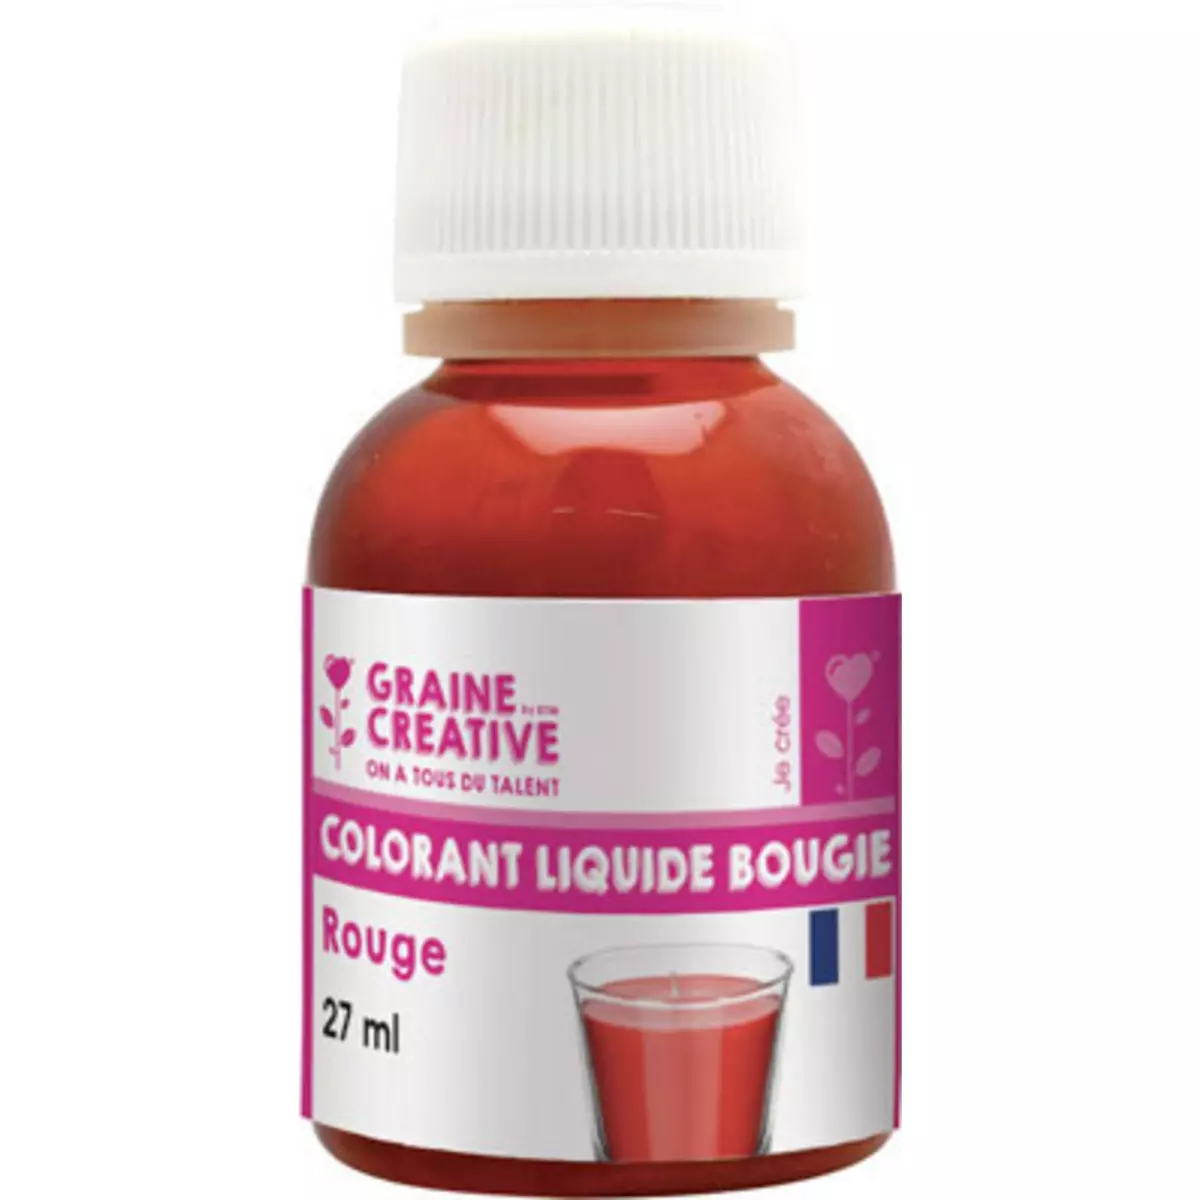 Graines Creatives Colorant liquide pour bougie 27 ml Rouge